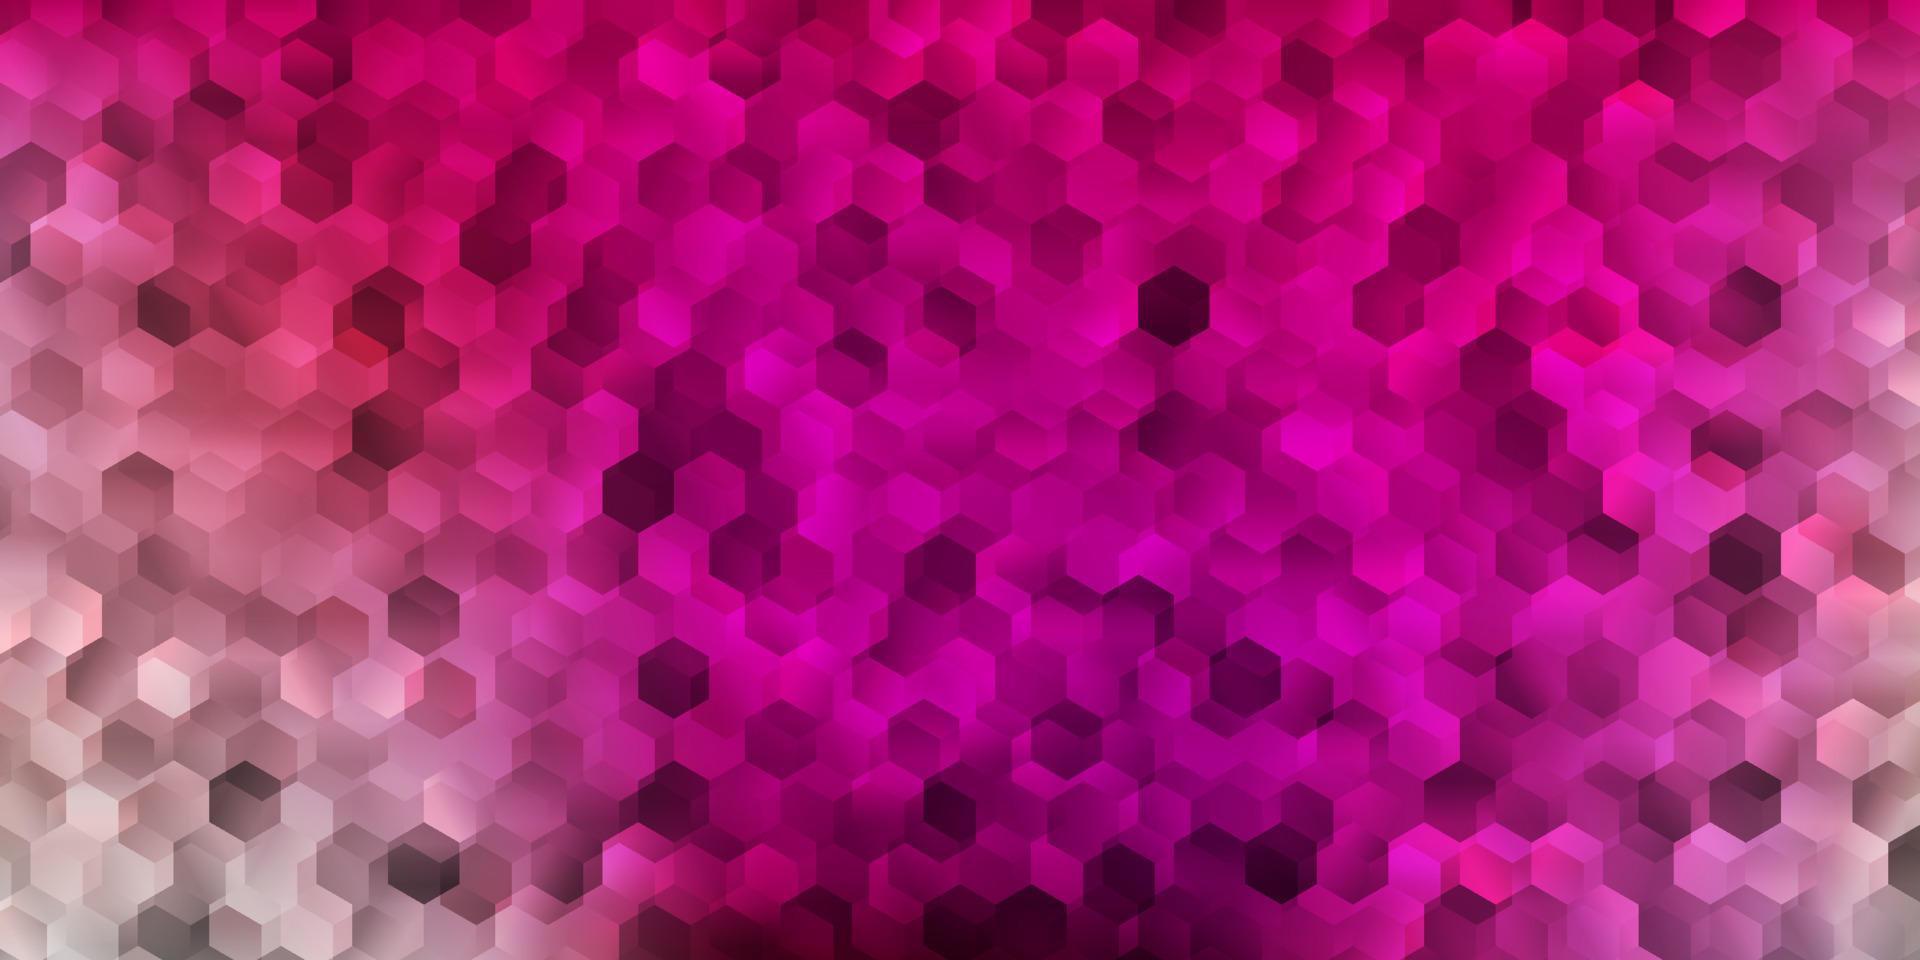 diseño de vector rosa claro con formas de hexágonos.